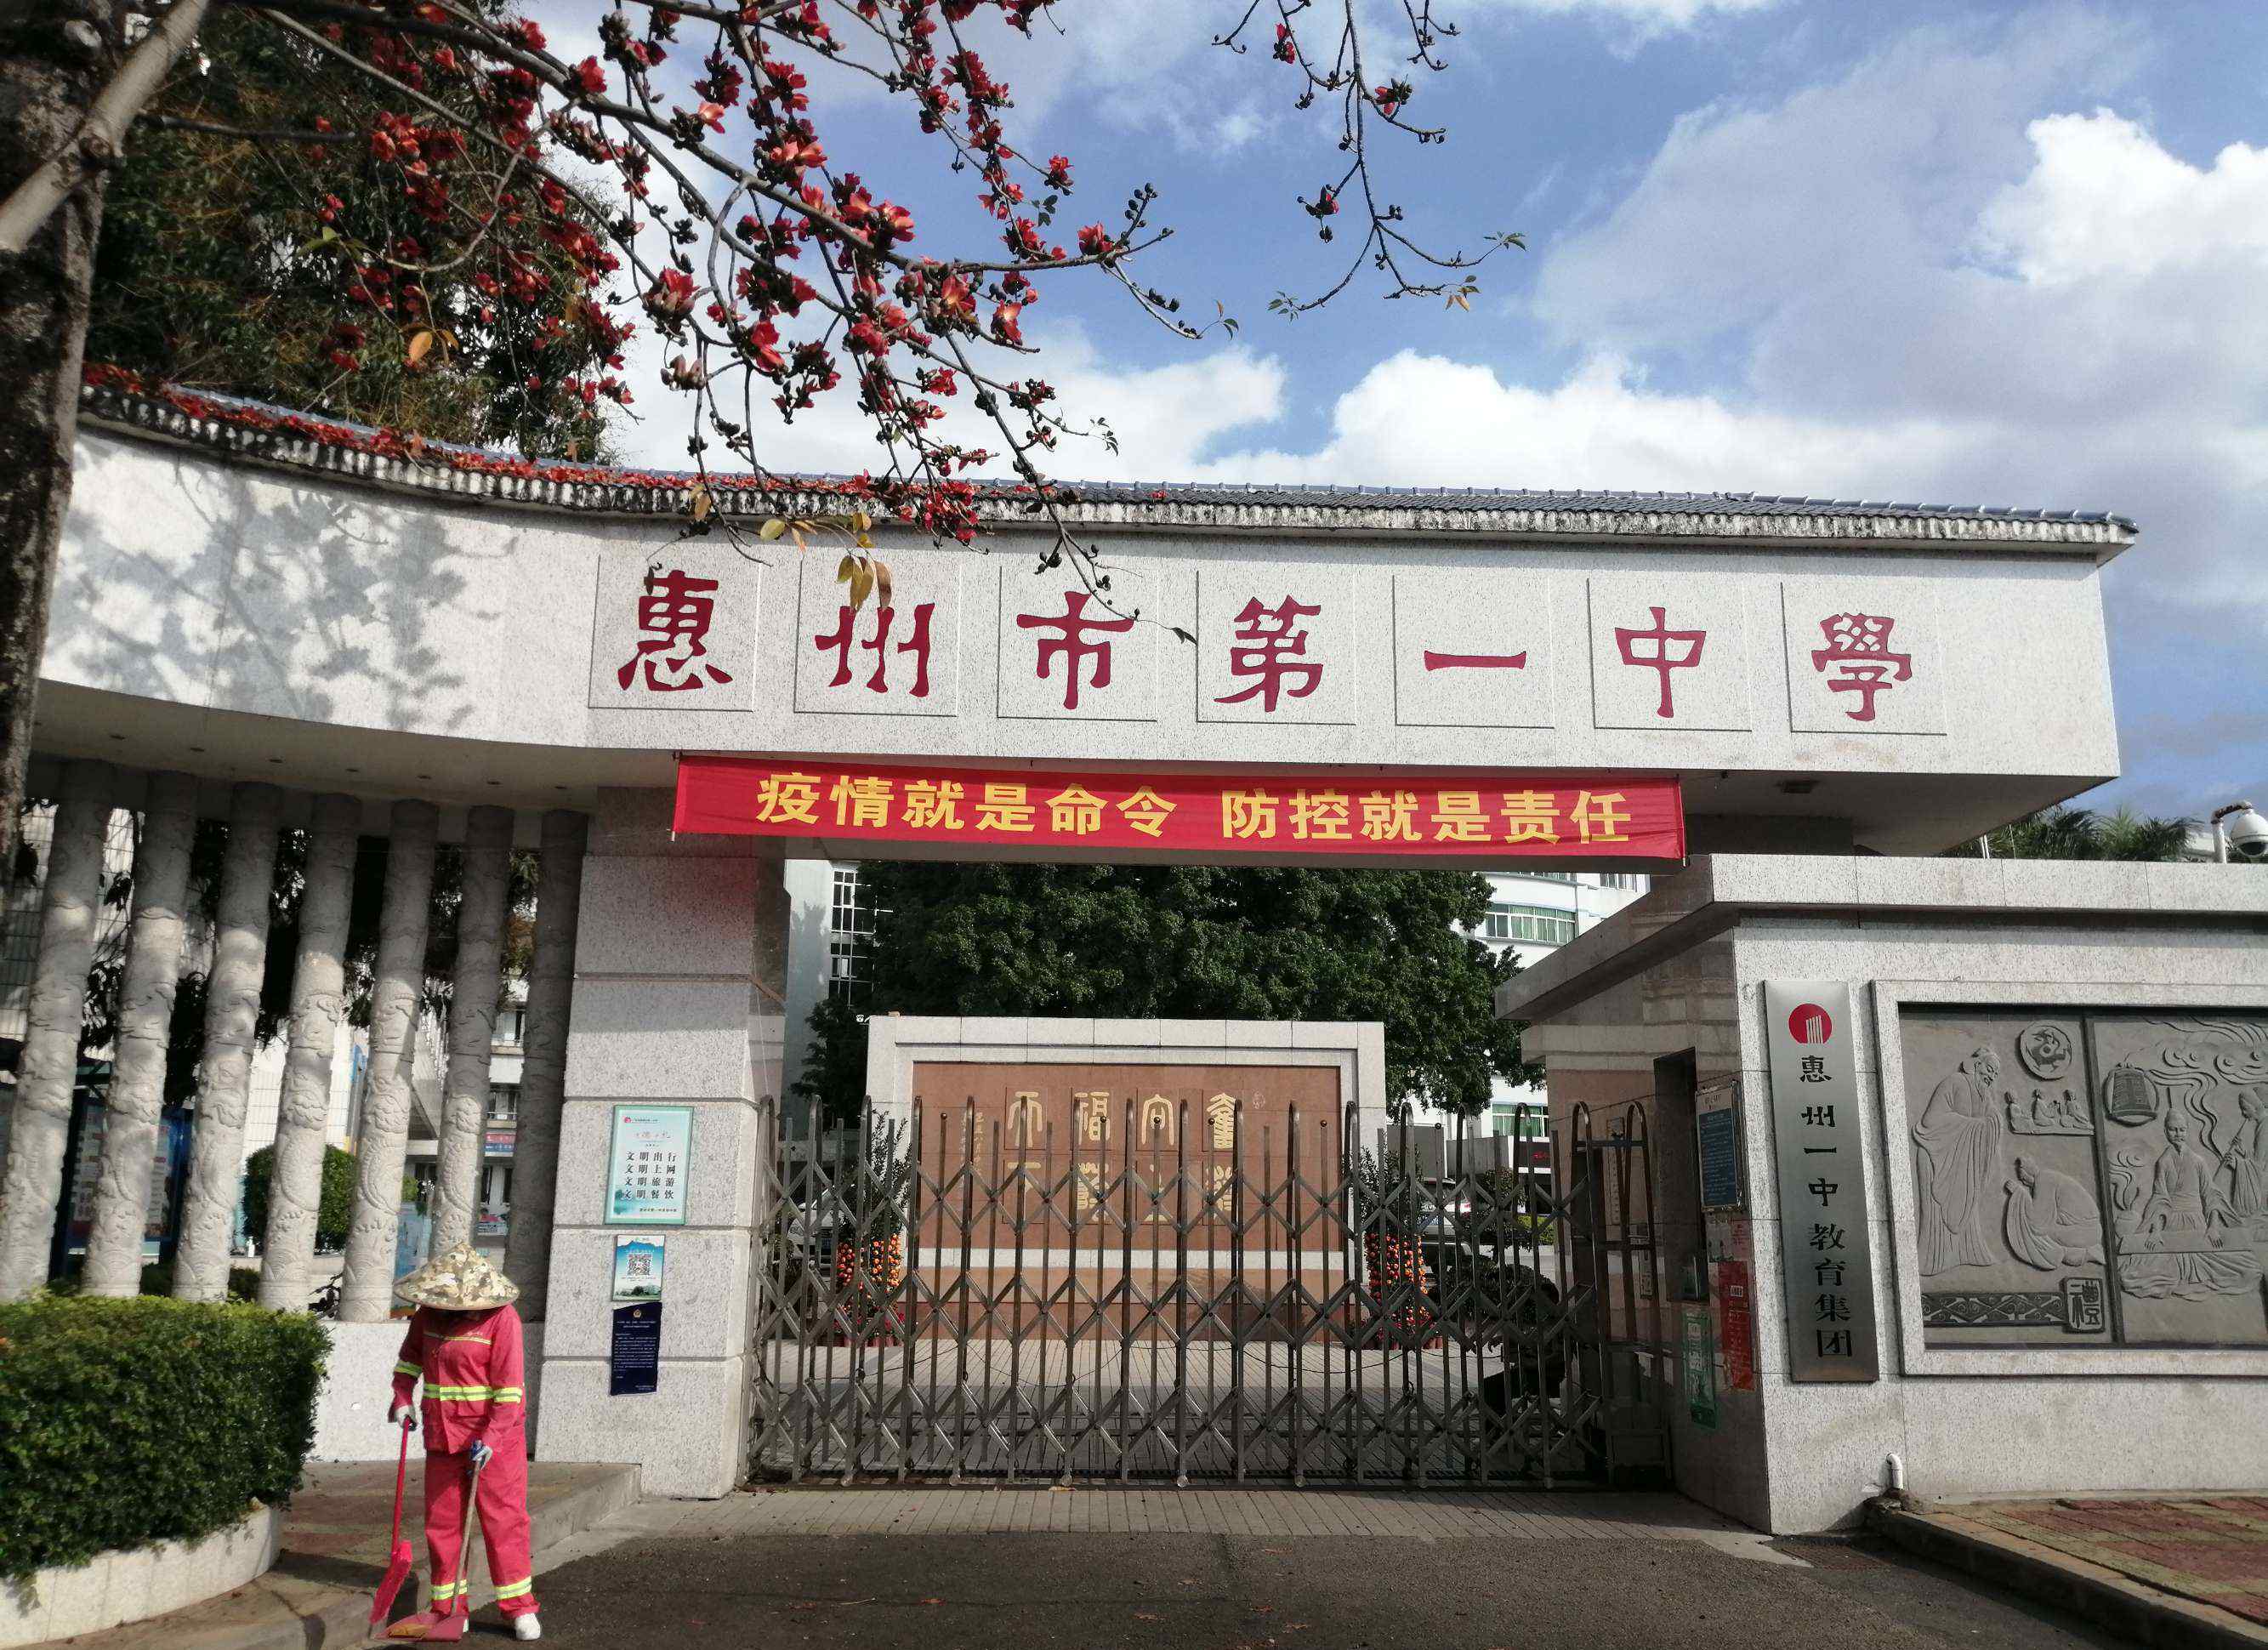 惠州市第一中学 重生记——惠州市第一中学初中部将原址重建